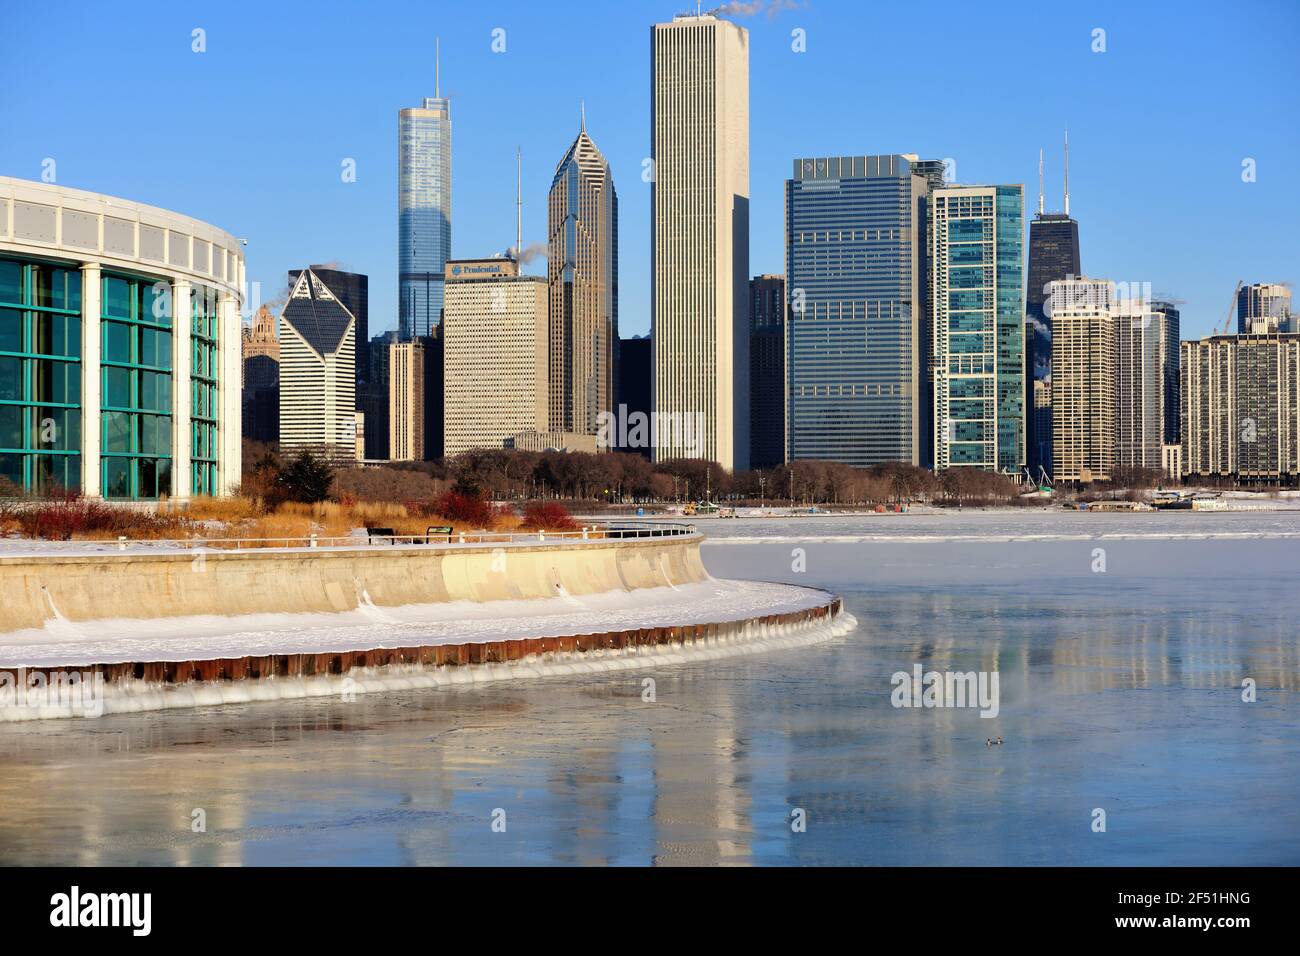 Chicago, Illinois, États-Unis. Les vents et le froid amer créent de la vapeur au-dessus de la glace dans le lac Michigan, le long du campus des musées de la ville. Banque D'Images